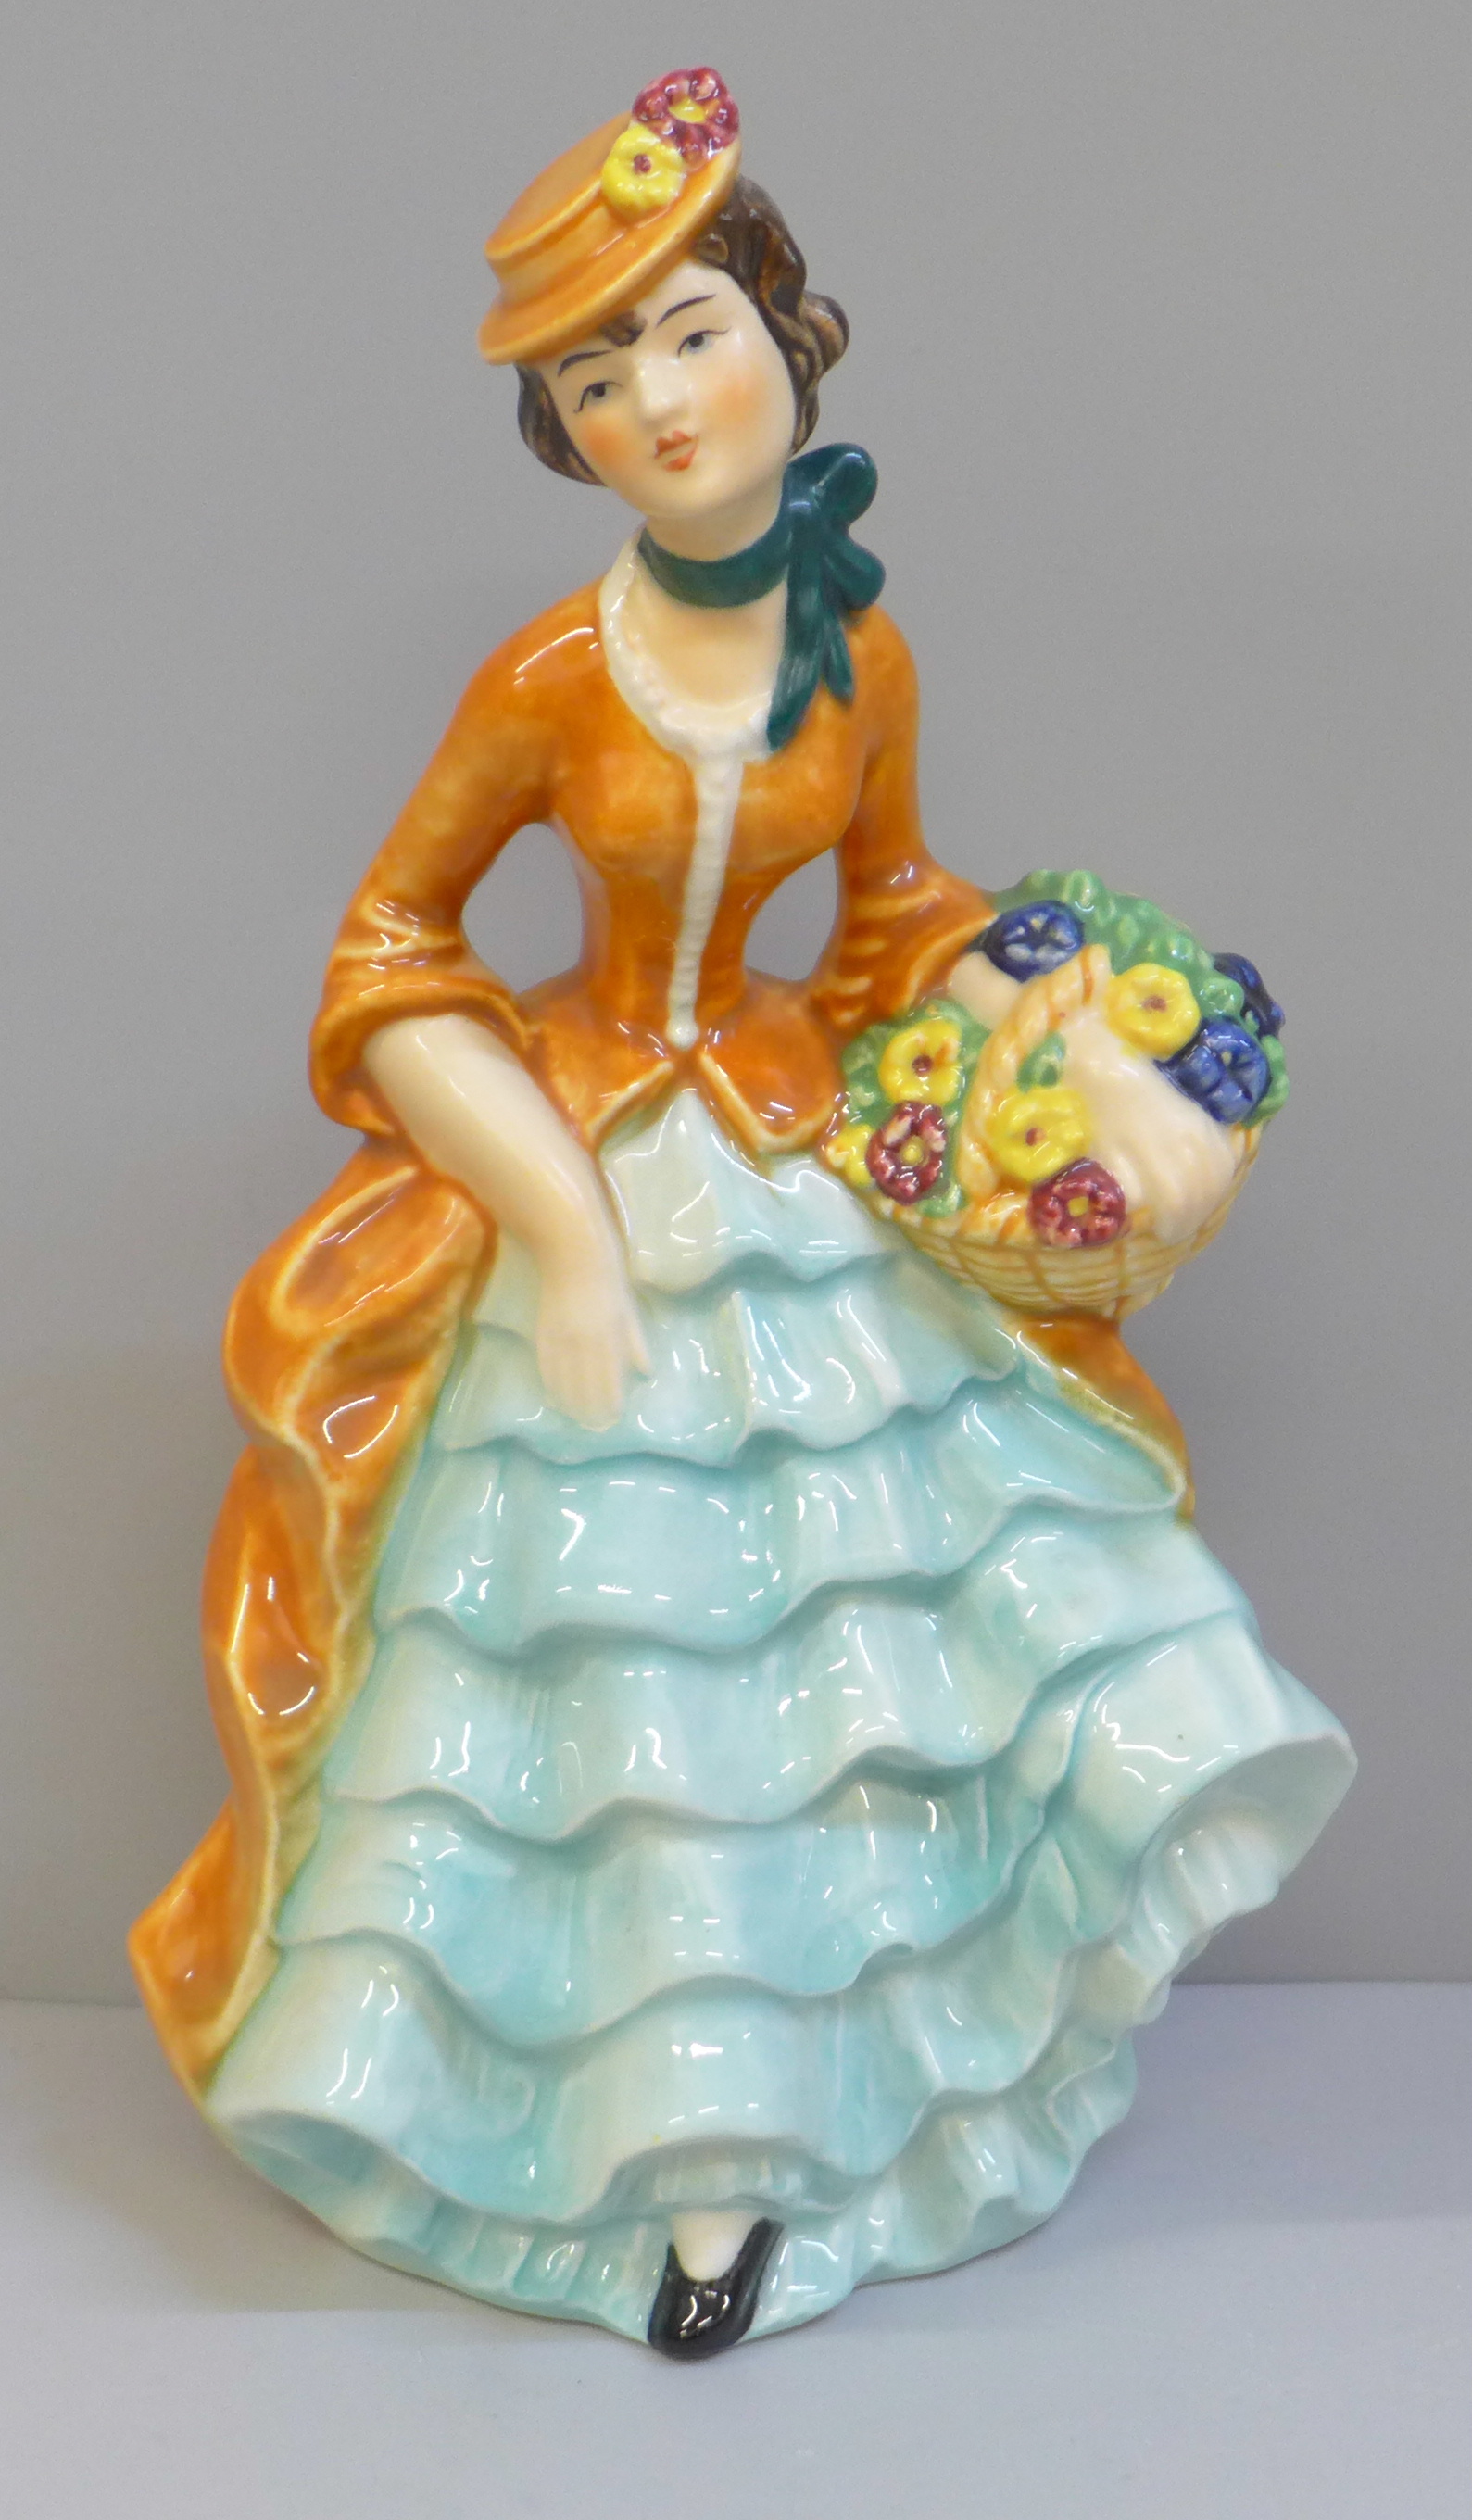 A Goebel figure of a lady